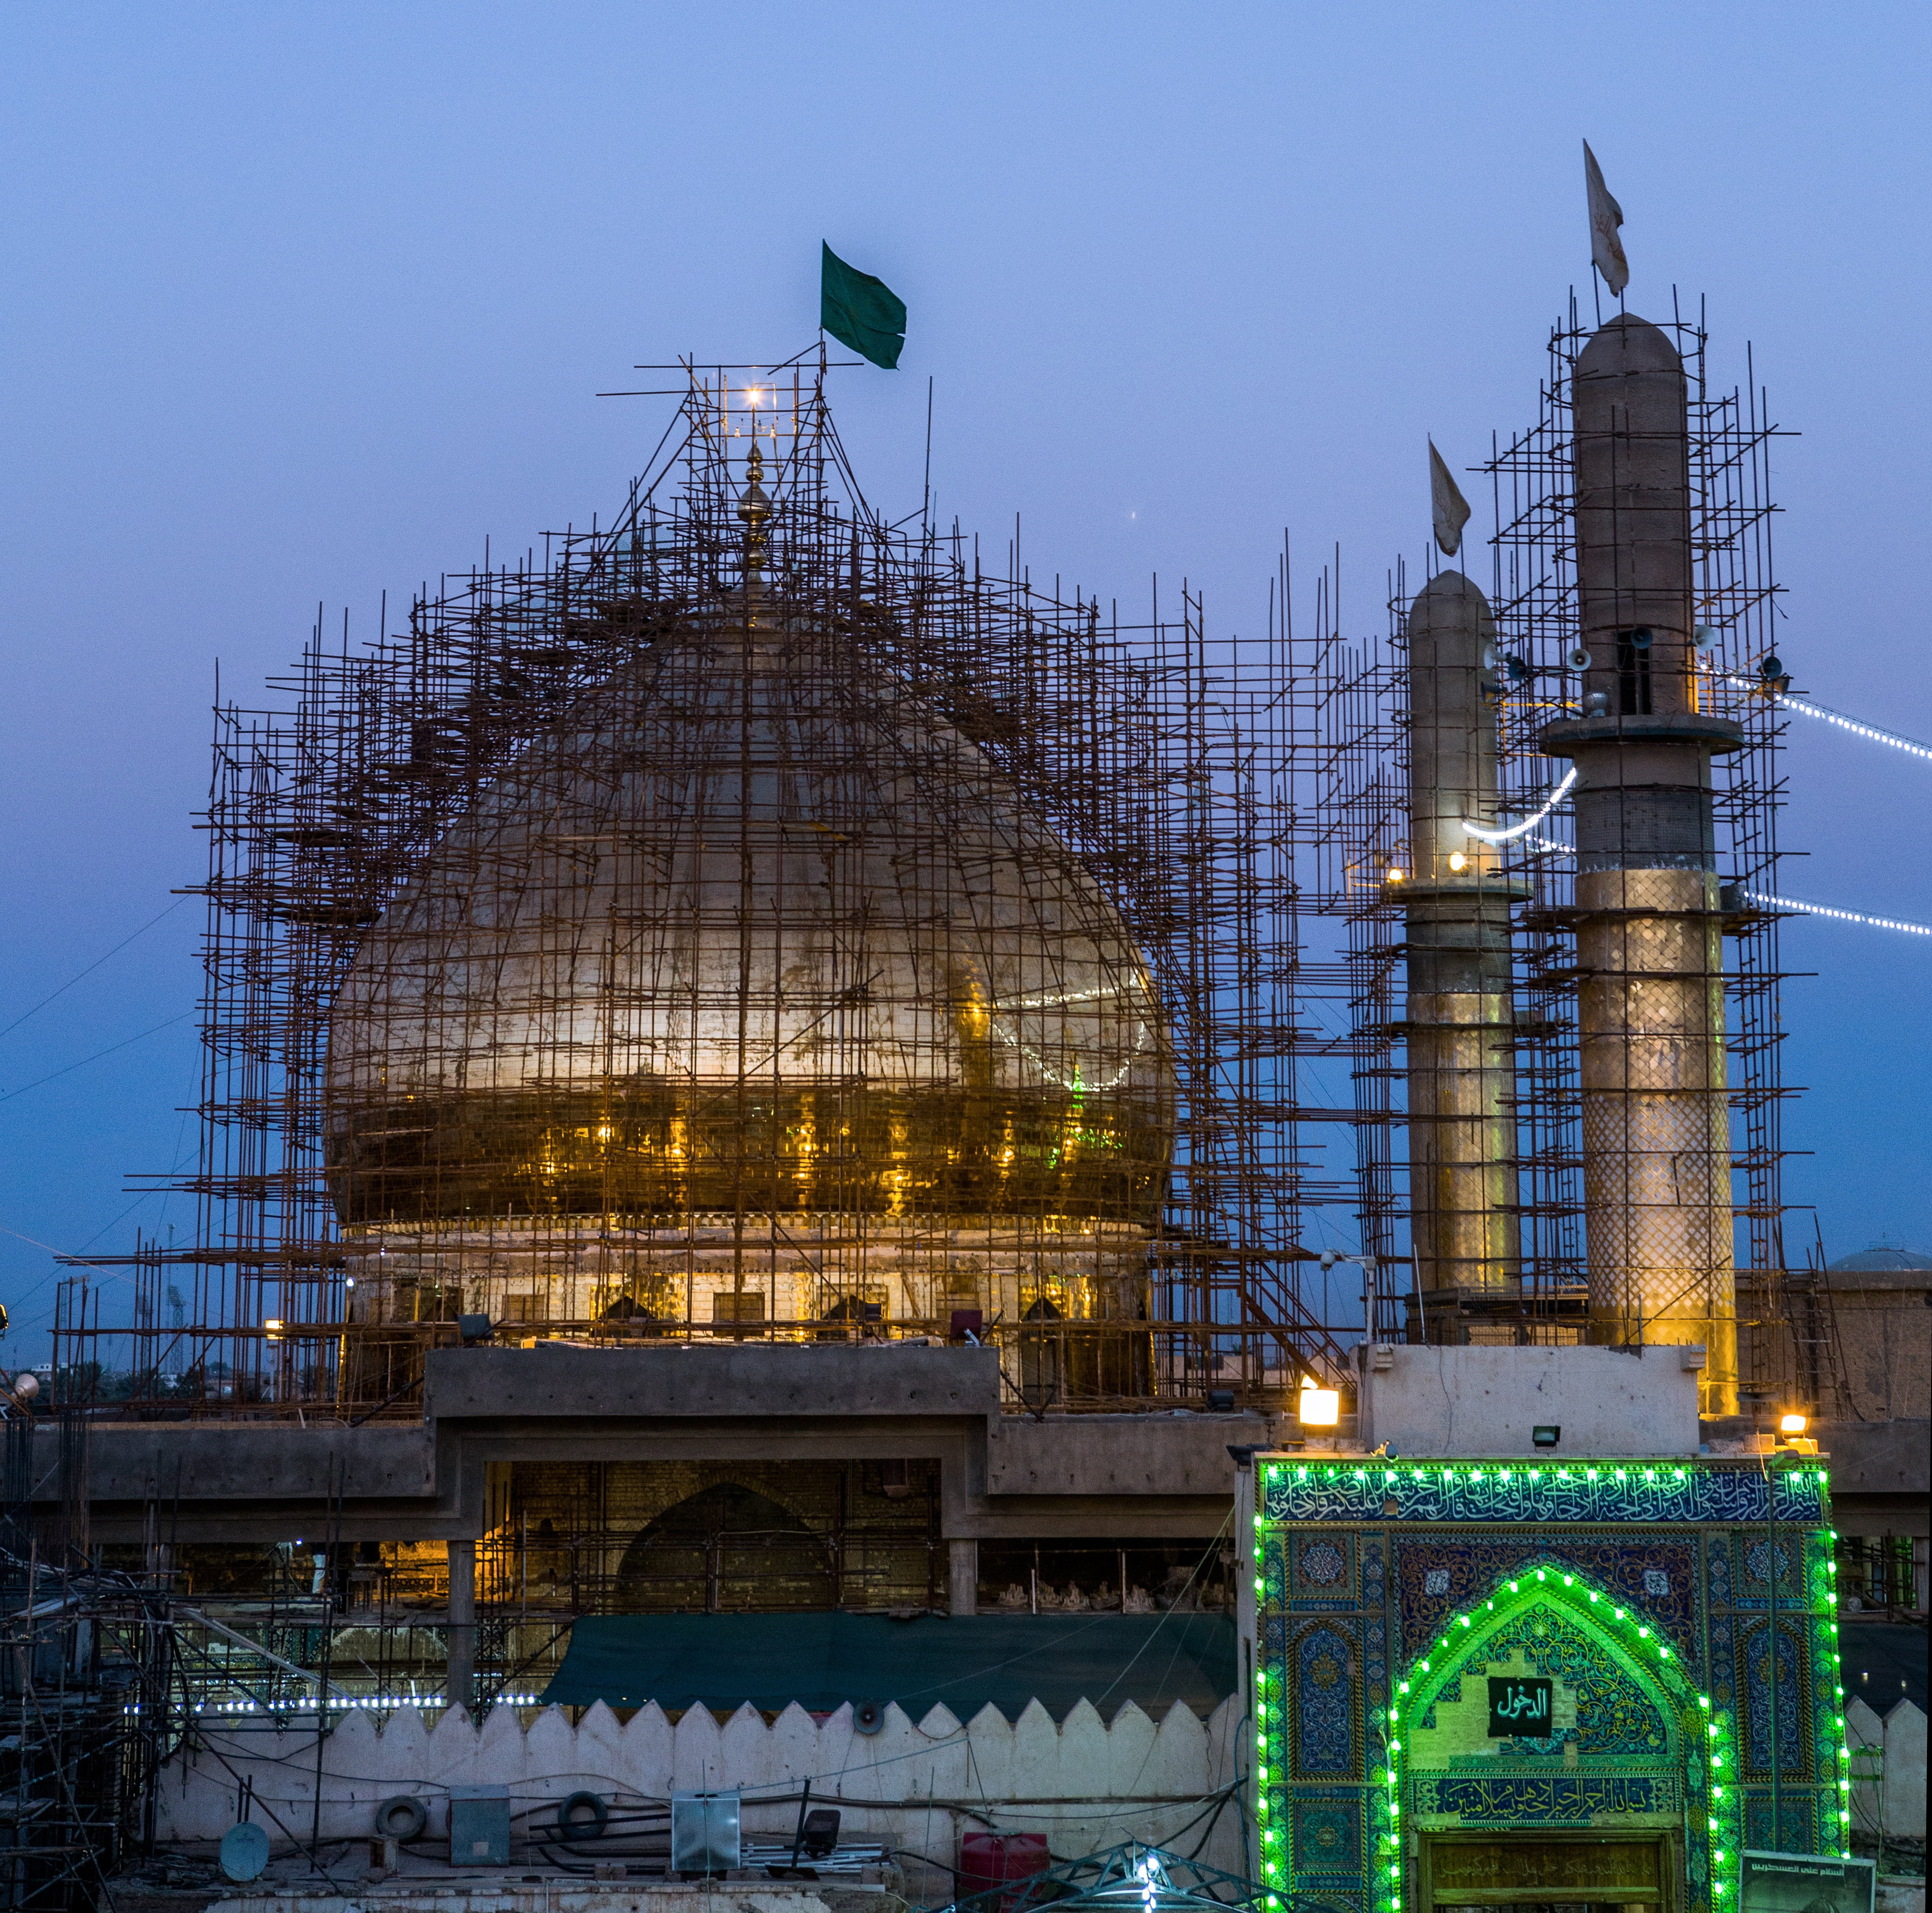 mosque under construction, al-askari mosque, repairs, minarets